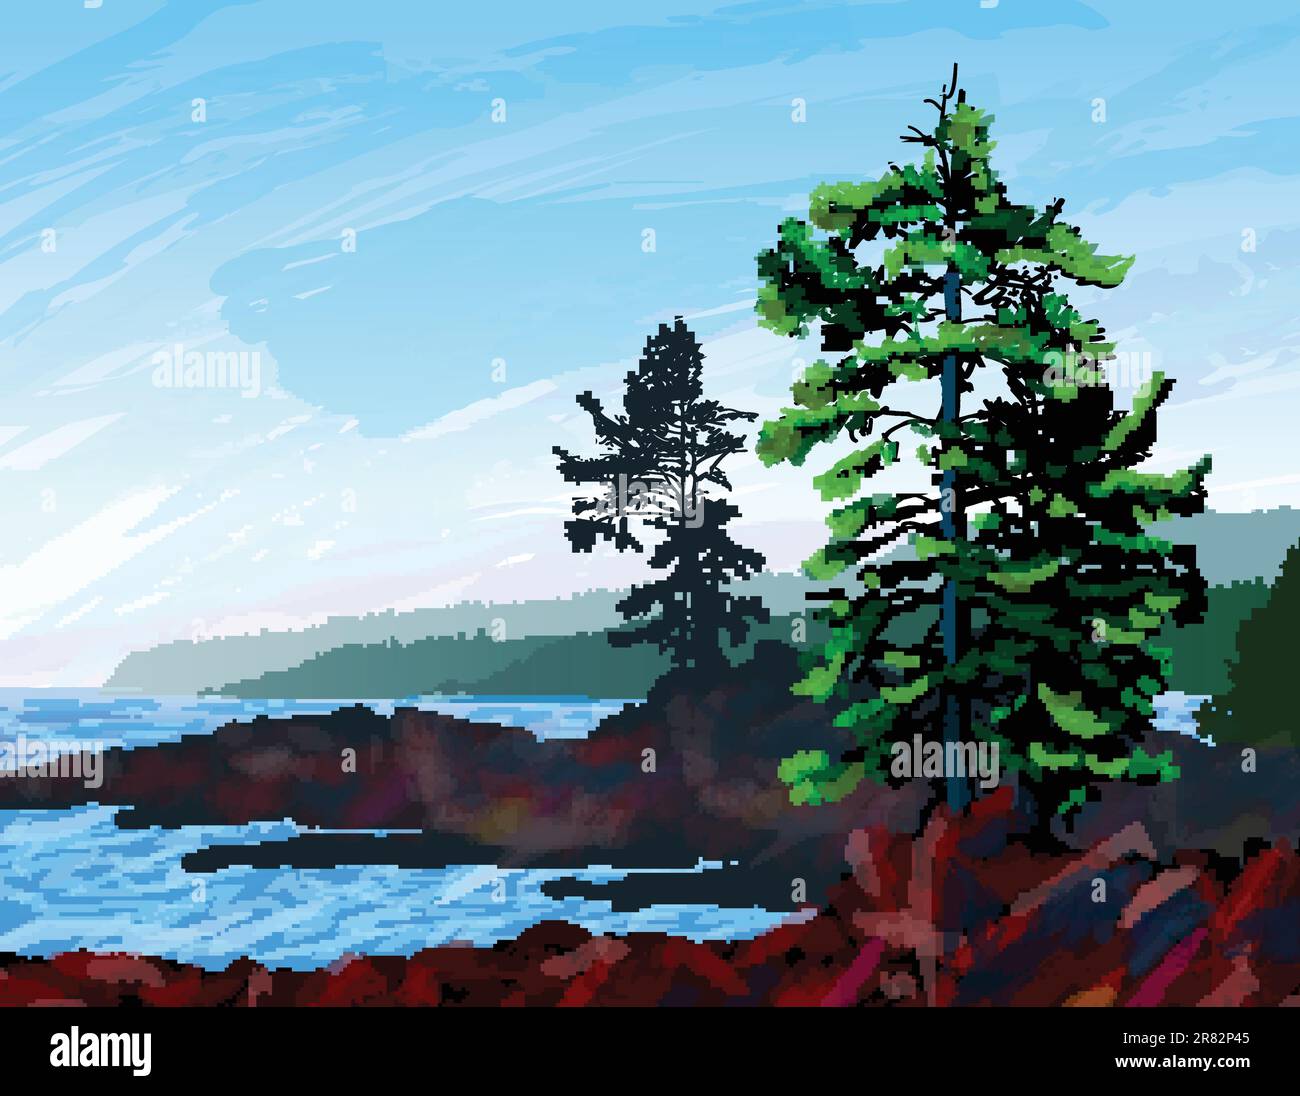 Splendido dipinto digitale che ritrae una scena dall'aspra costa occidentale dell'isola di Vancouver, British Columbia. Illustrazione Vettoriale